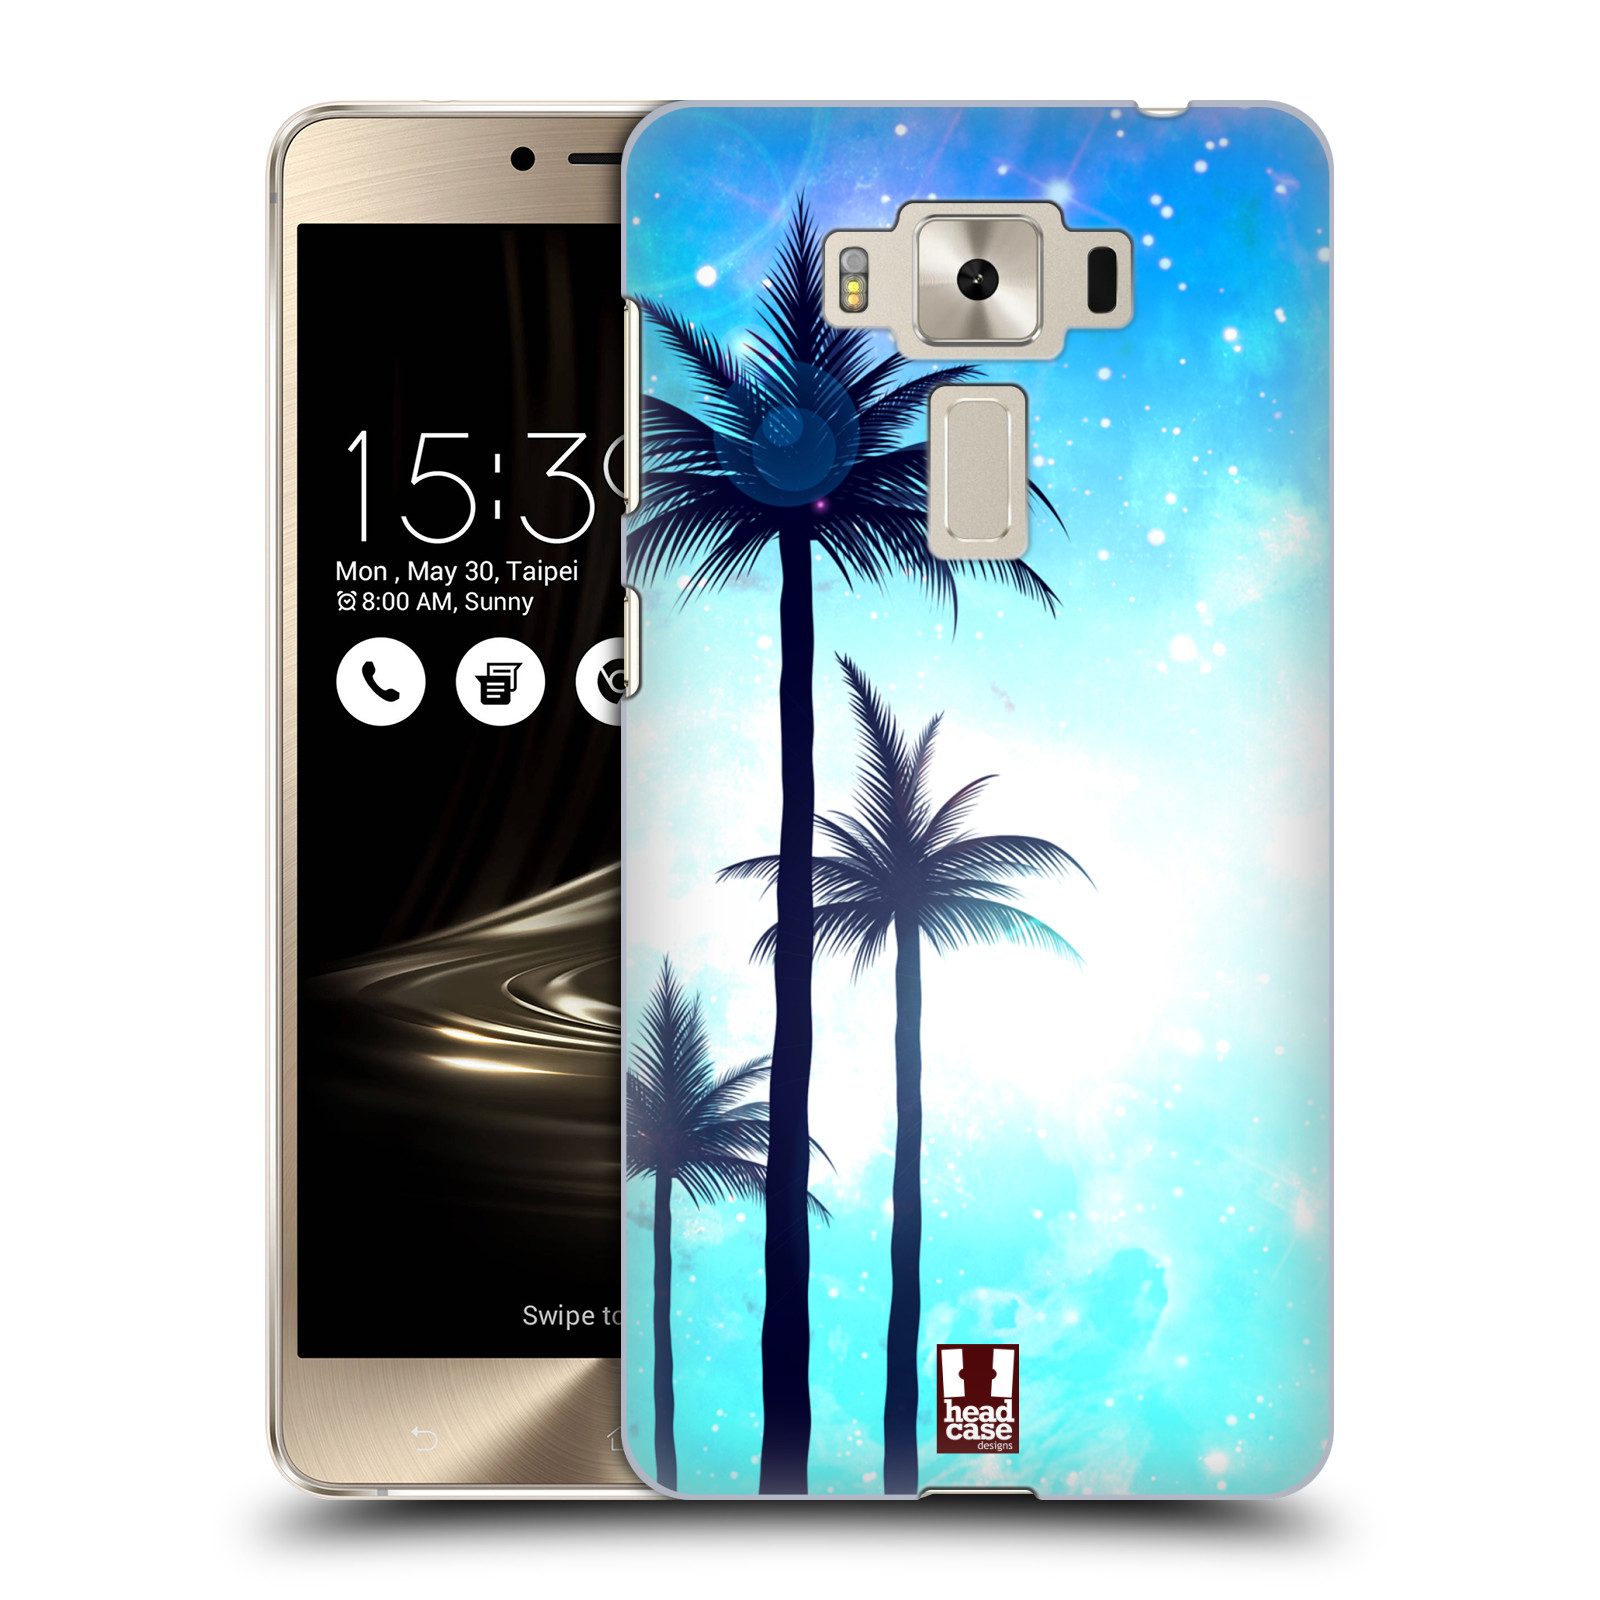 HEAD CASE plastový obal na mobil Asus Zenfone 3 DELUXE ZS550KL vzor Kreslený motiv silueta moře a palmy MODRÁ